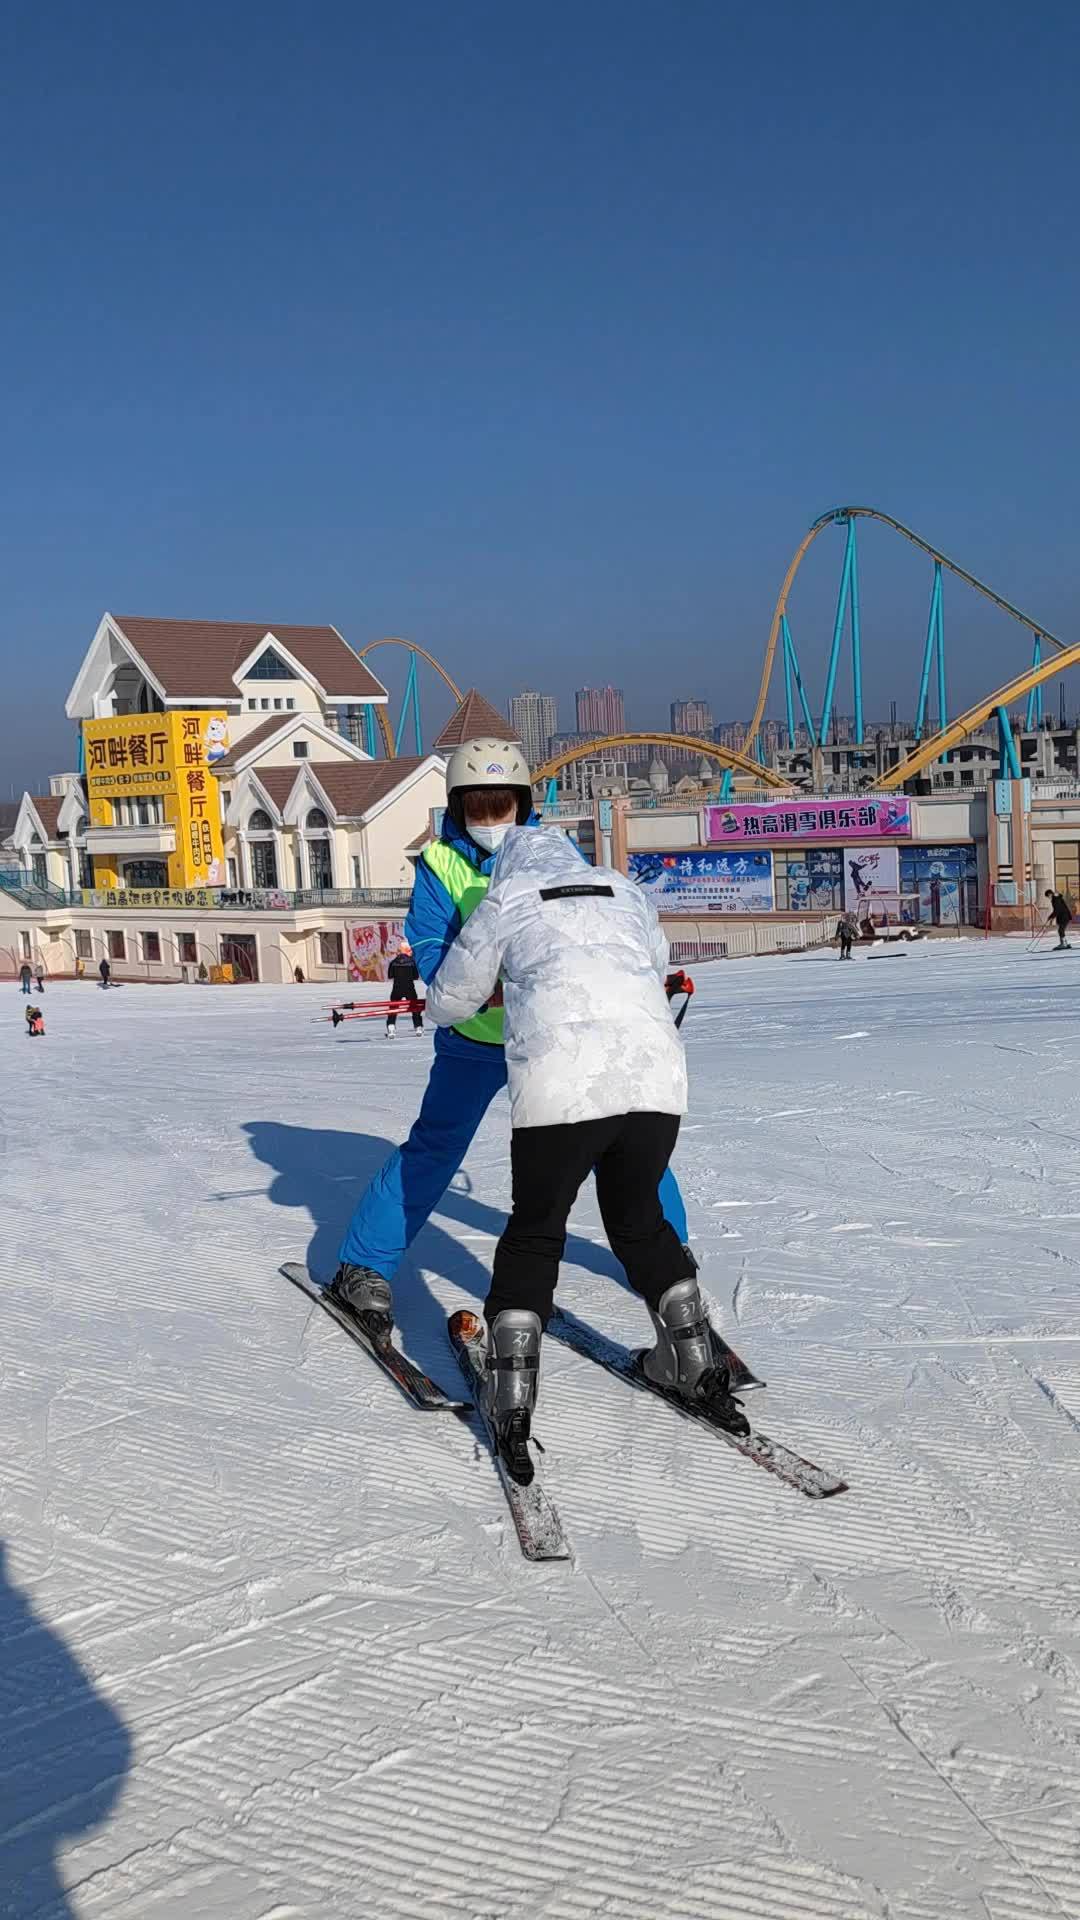 热高乐园 冬天一起去滑雪吧 全民冰雪季 这就是东北冬天的浪漫吧 东北